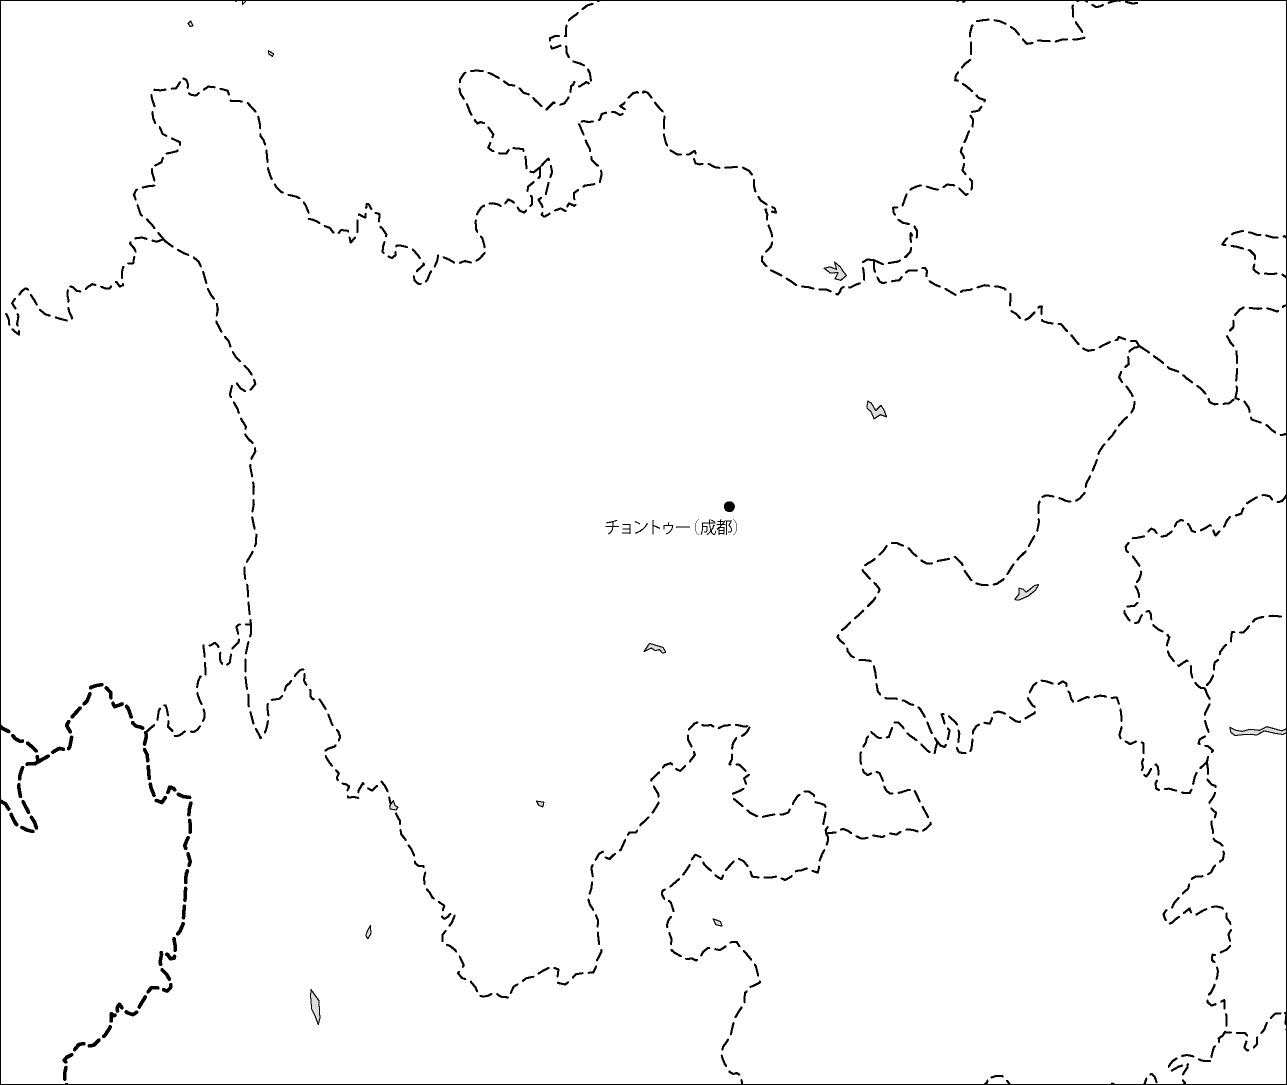 四川省白地図(省都あり)のフリーデータの画像